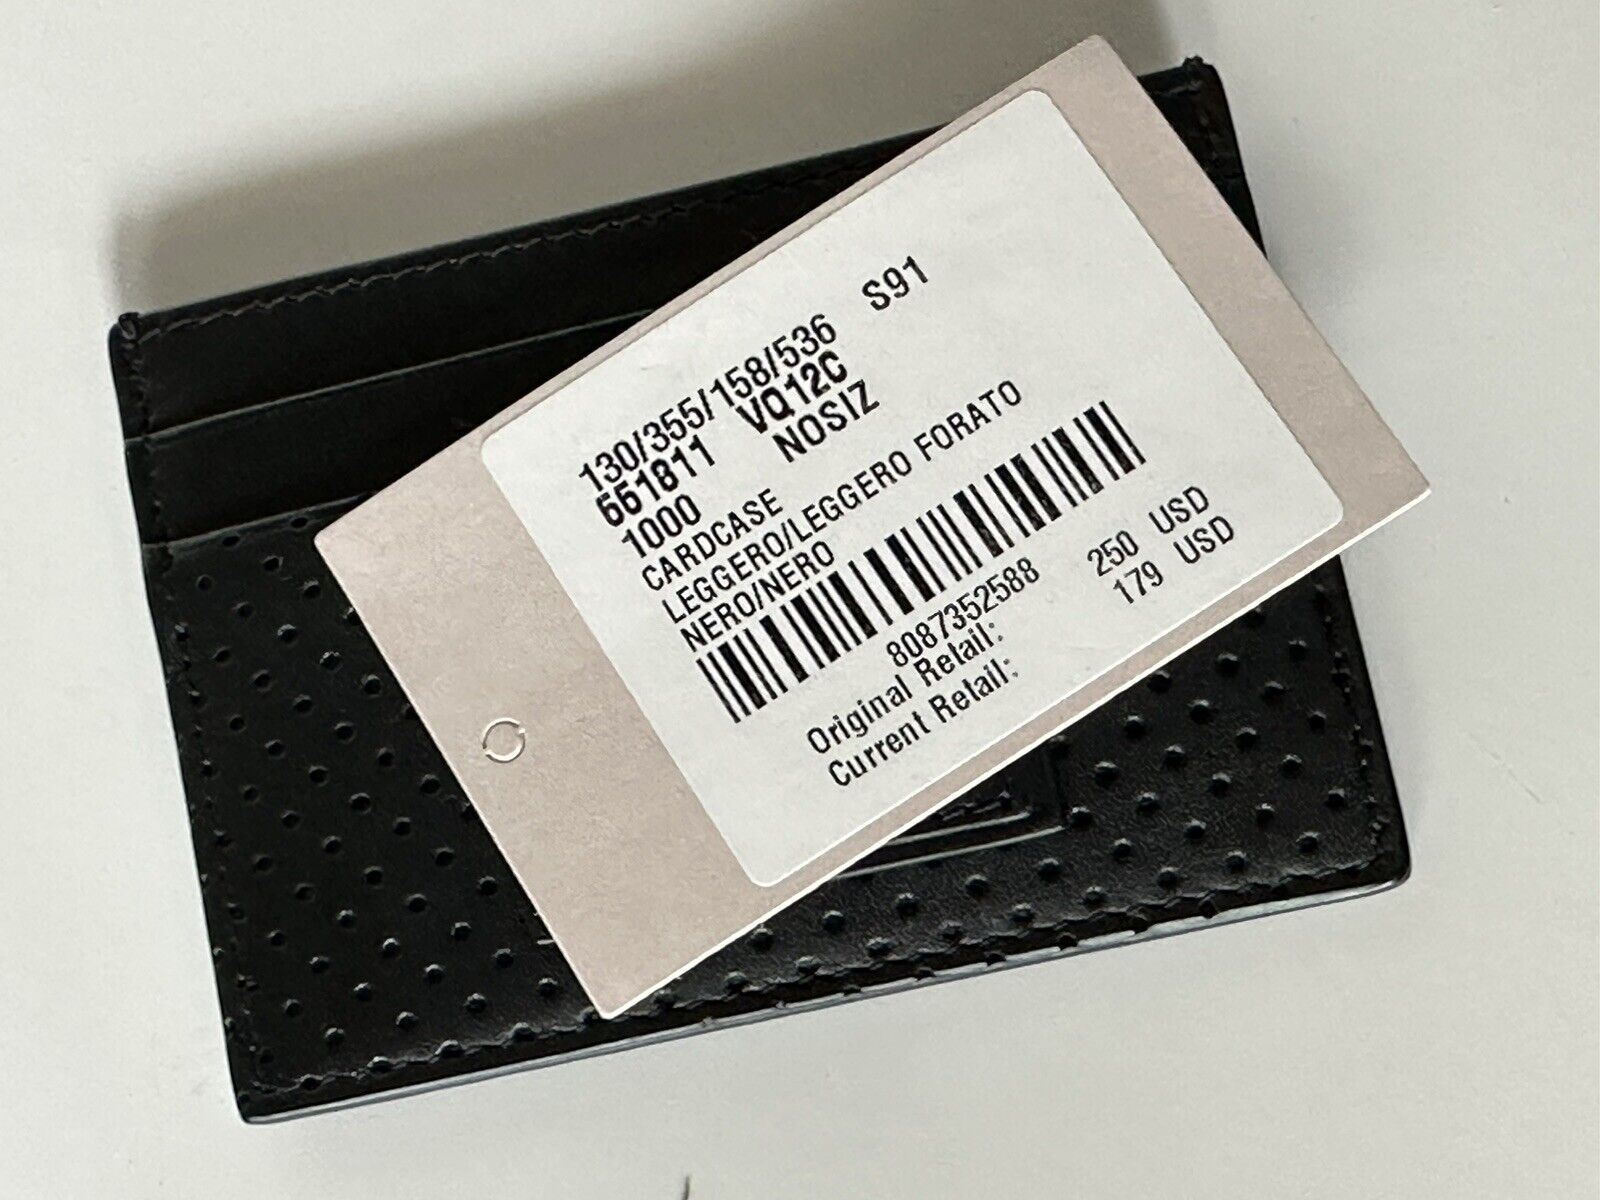 NWT $250 Bottega Veneta Leggero Мужской кожаный футляр для визиток, черный 551811 Италия 